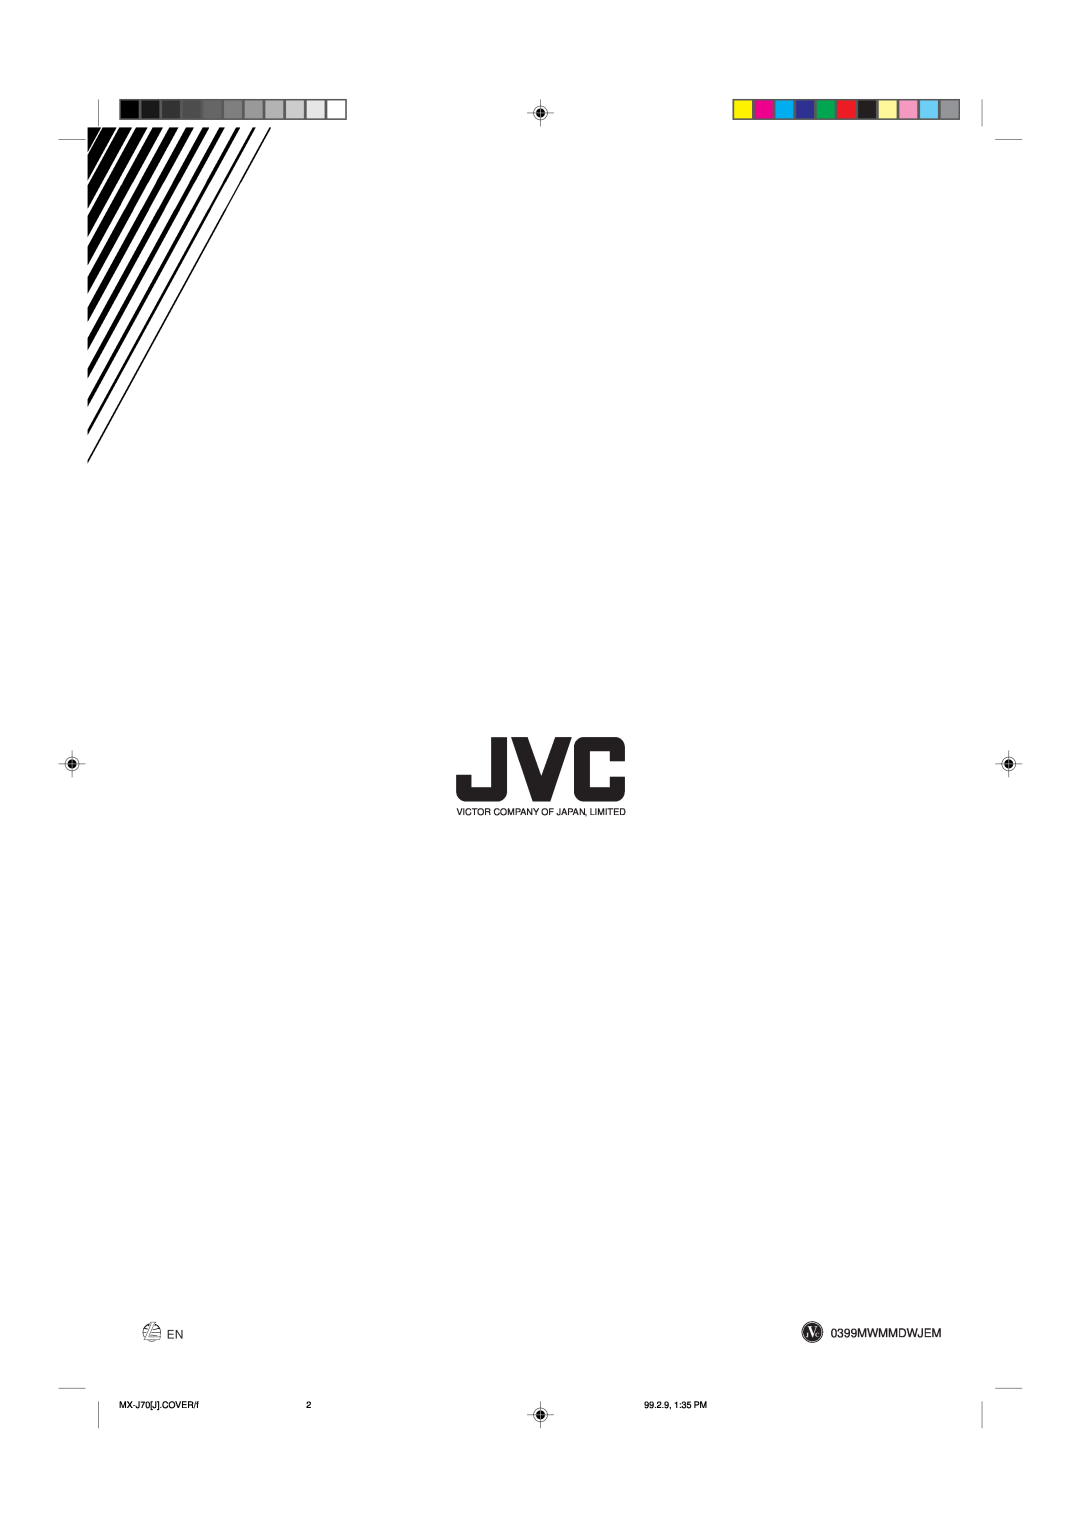 JVC Model MX-J70J manual 0399MWMMDWJEM, Victor Company Of Japan, Limited, MX-J70J.COVER/f, 99.2.9, 1 35 PM 